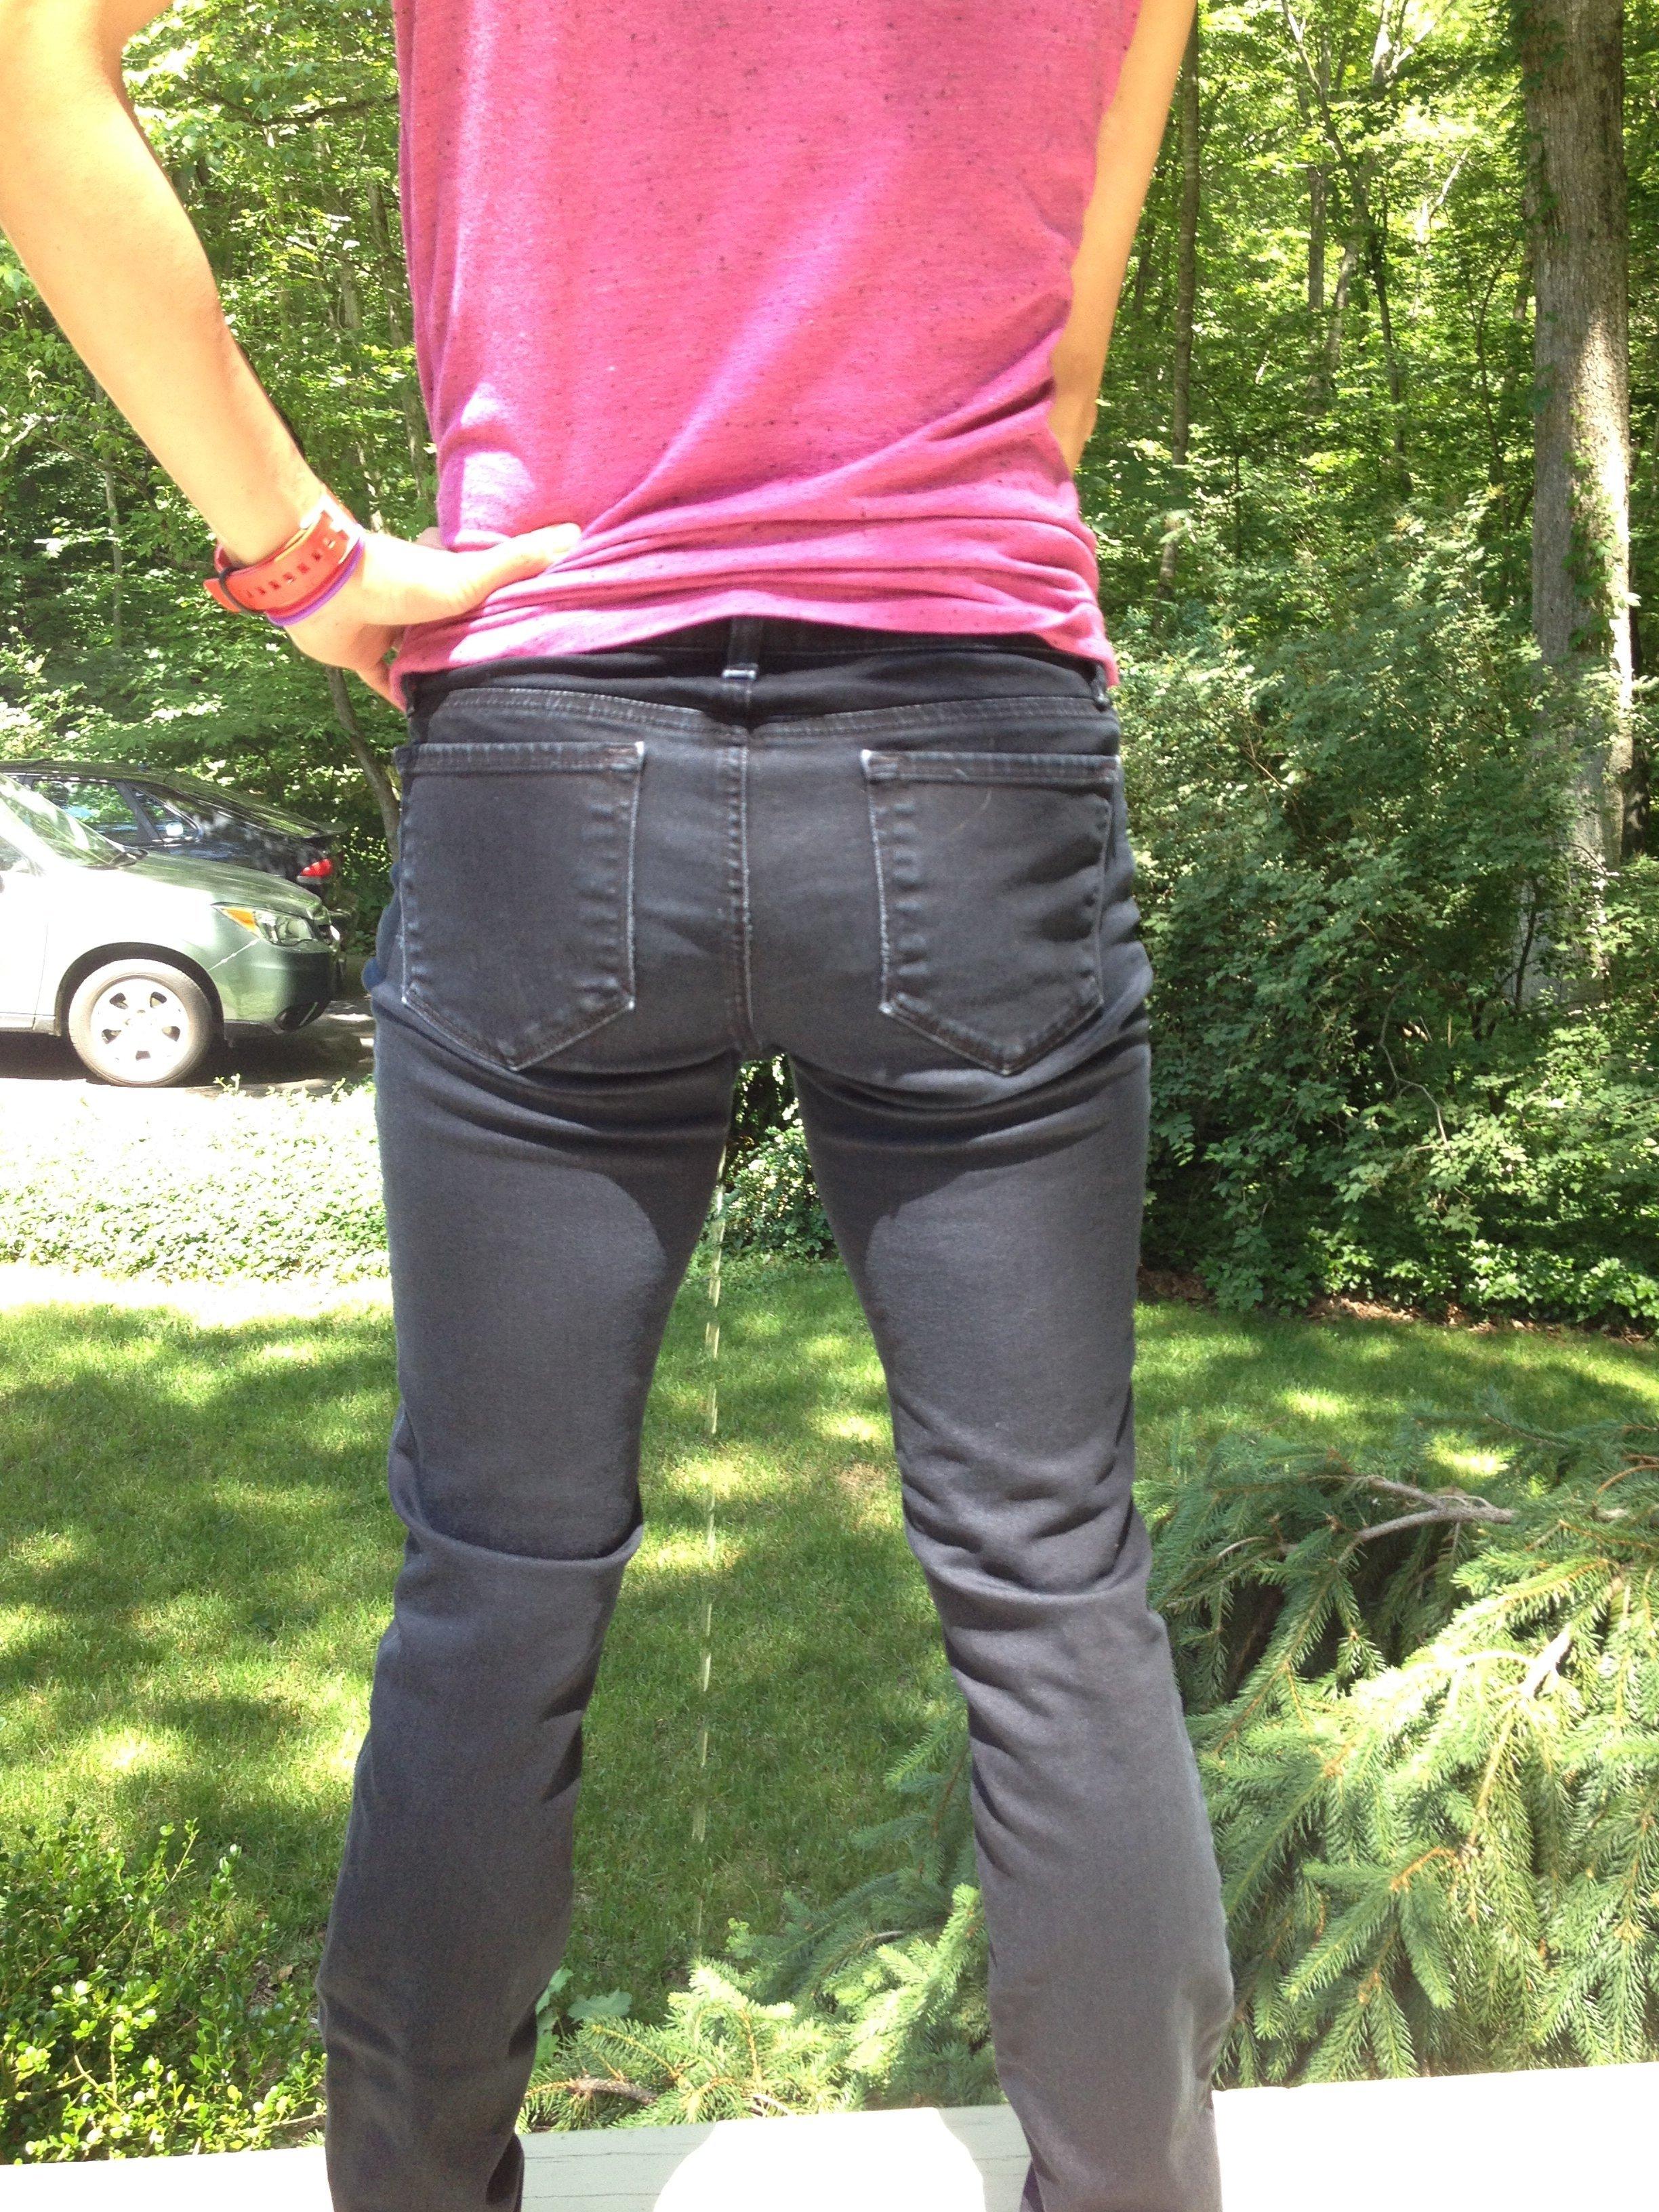 Teen girl pees pants